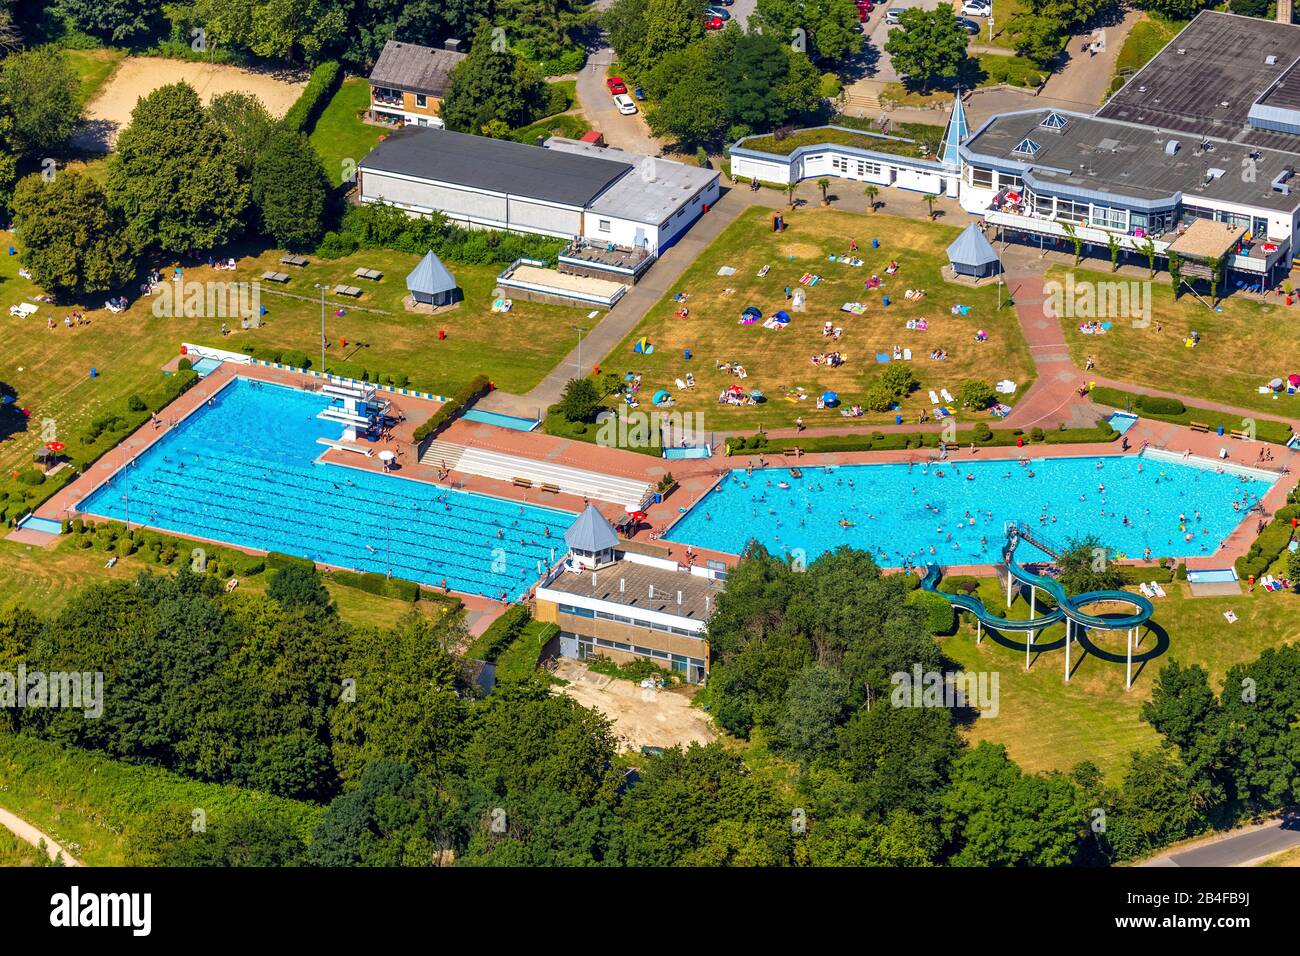 Vue aérienne de la piscine extérieure et de la piscine publique HeljensBad avec piscine nageuse, piscine pour longueurs et bains de soleil à Heiligenhaus dans la région de la Ruhr dans l'État fédéral de Rhénanie-du-Nord-Westphalie en Allemagne, Banque D'Images